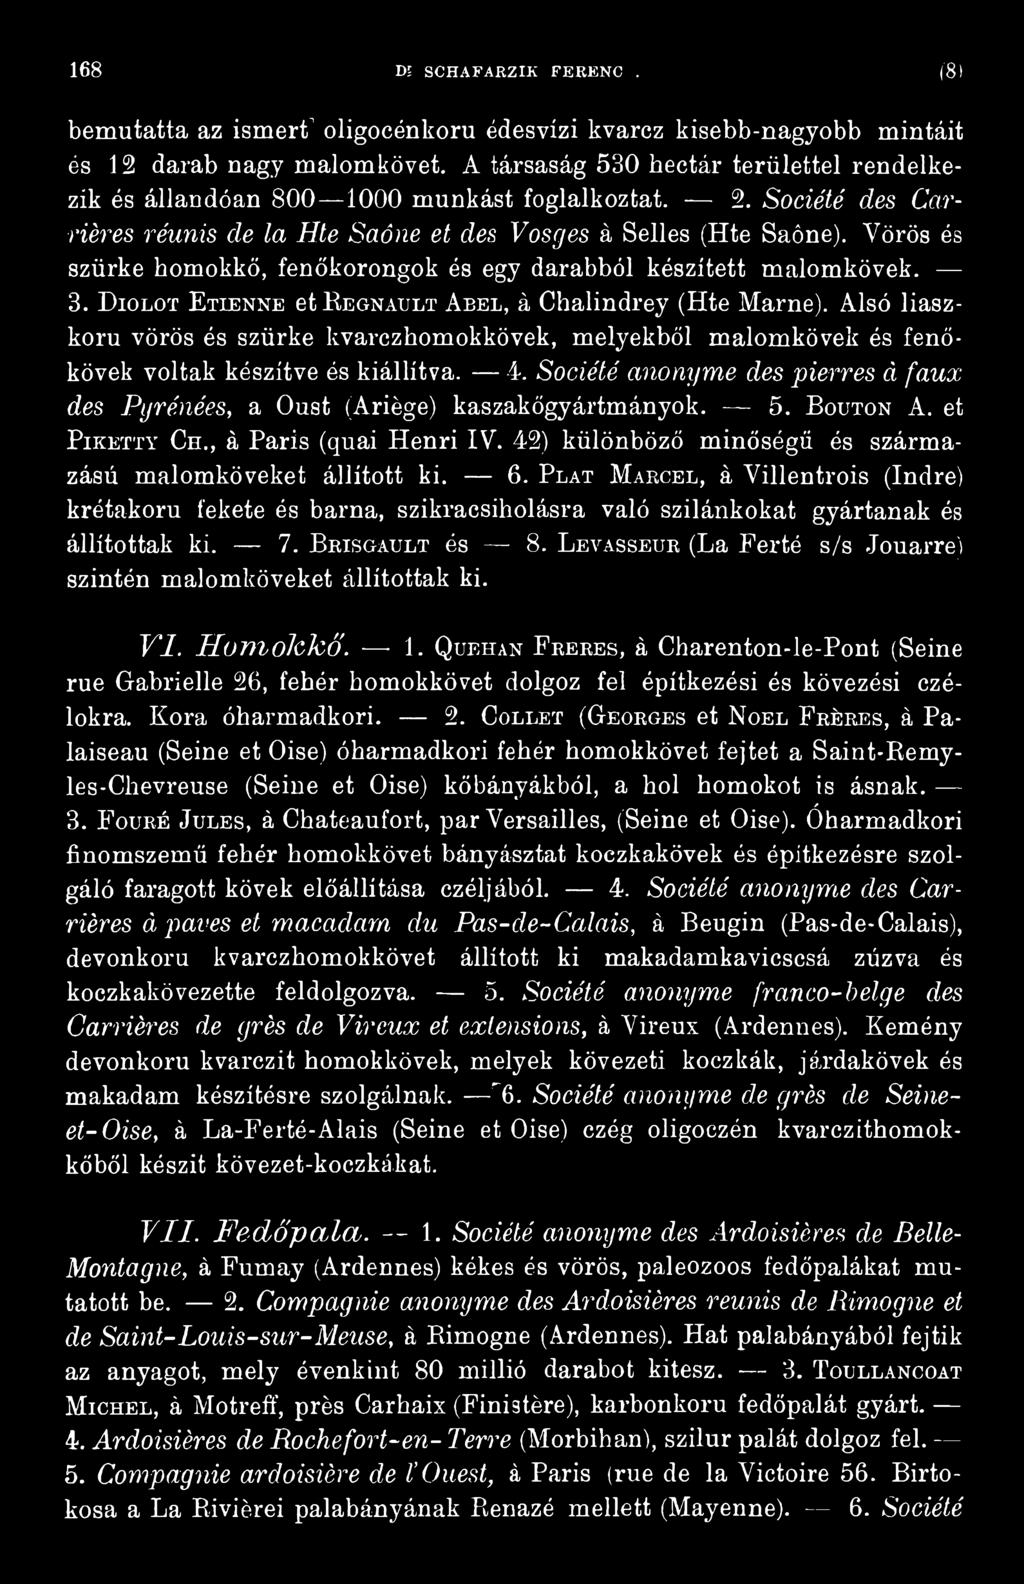 5. B outon A. et Piketty Ch., á Paris (quai Henri IV. 42) különböző minőségű és származású malomköveket állított ki. 6.